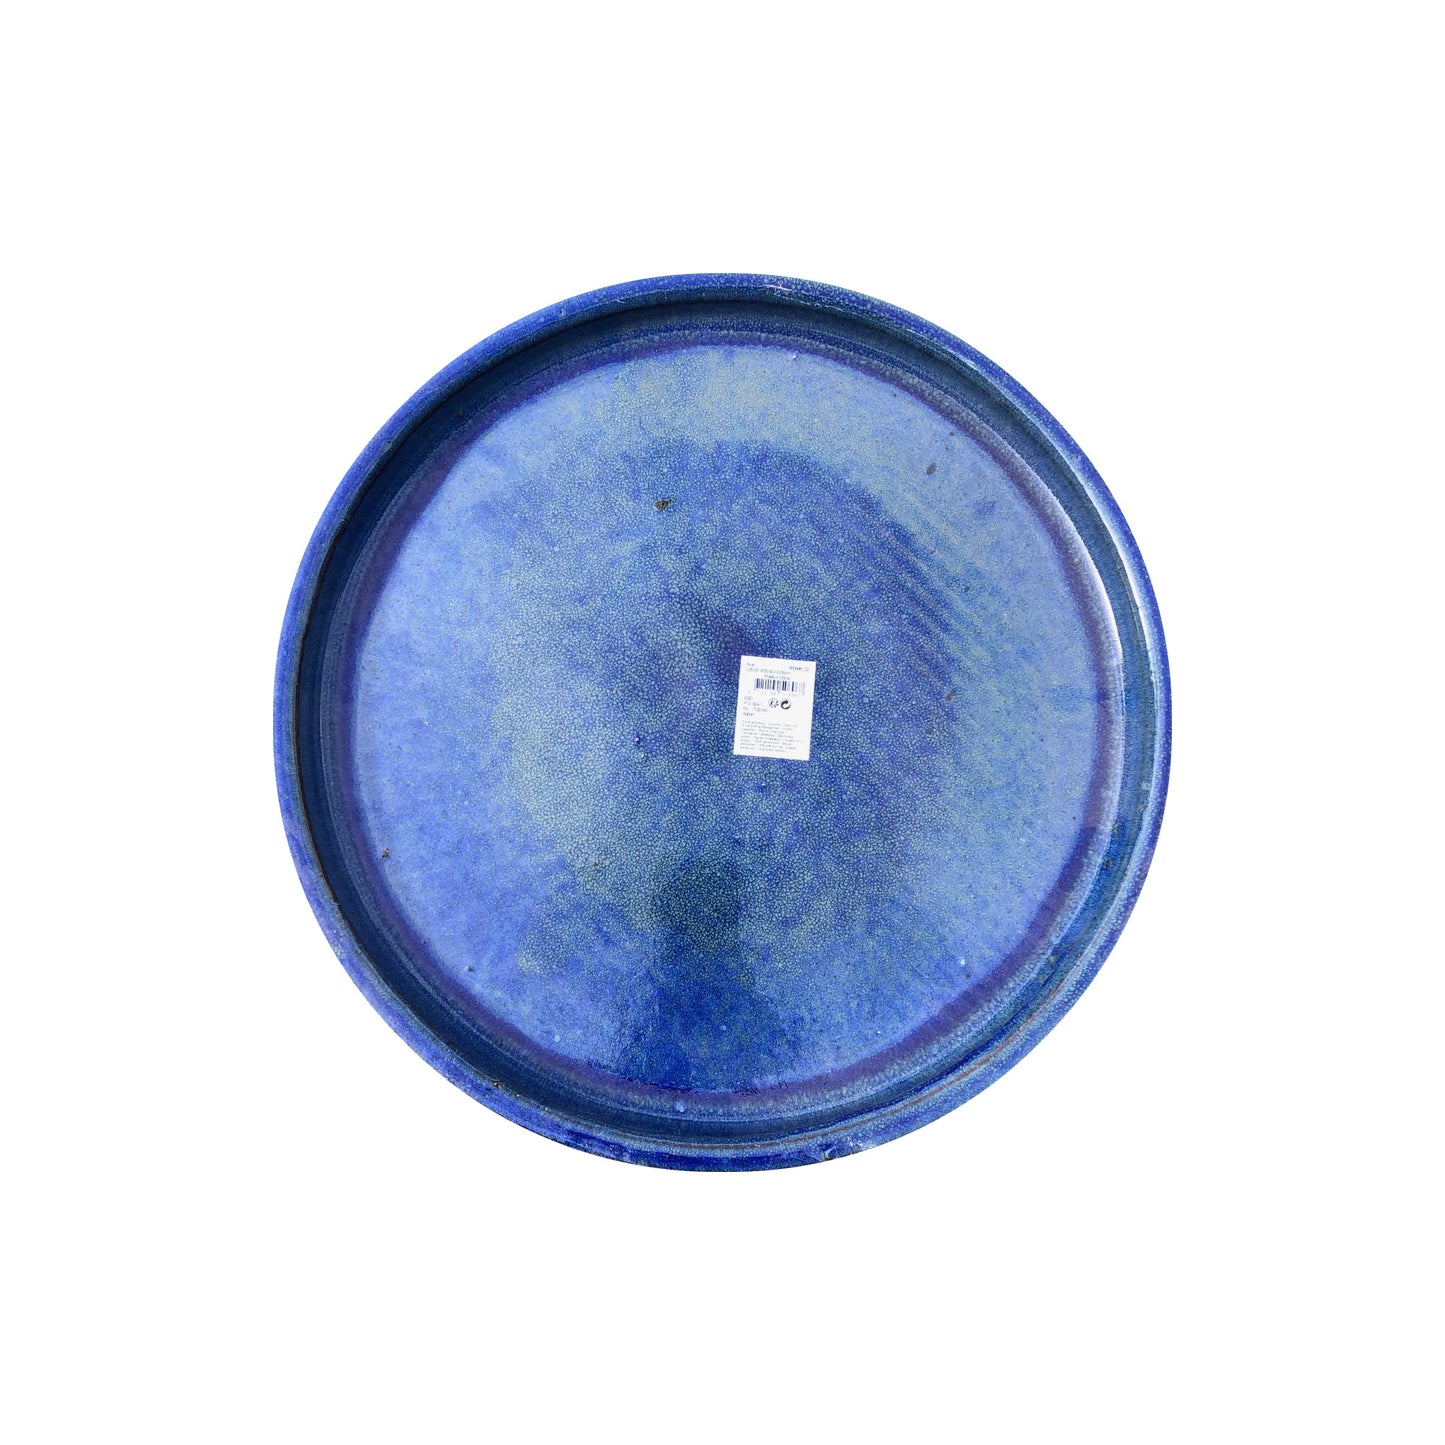 Plate blue 35cm